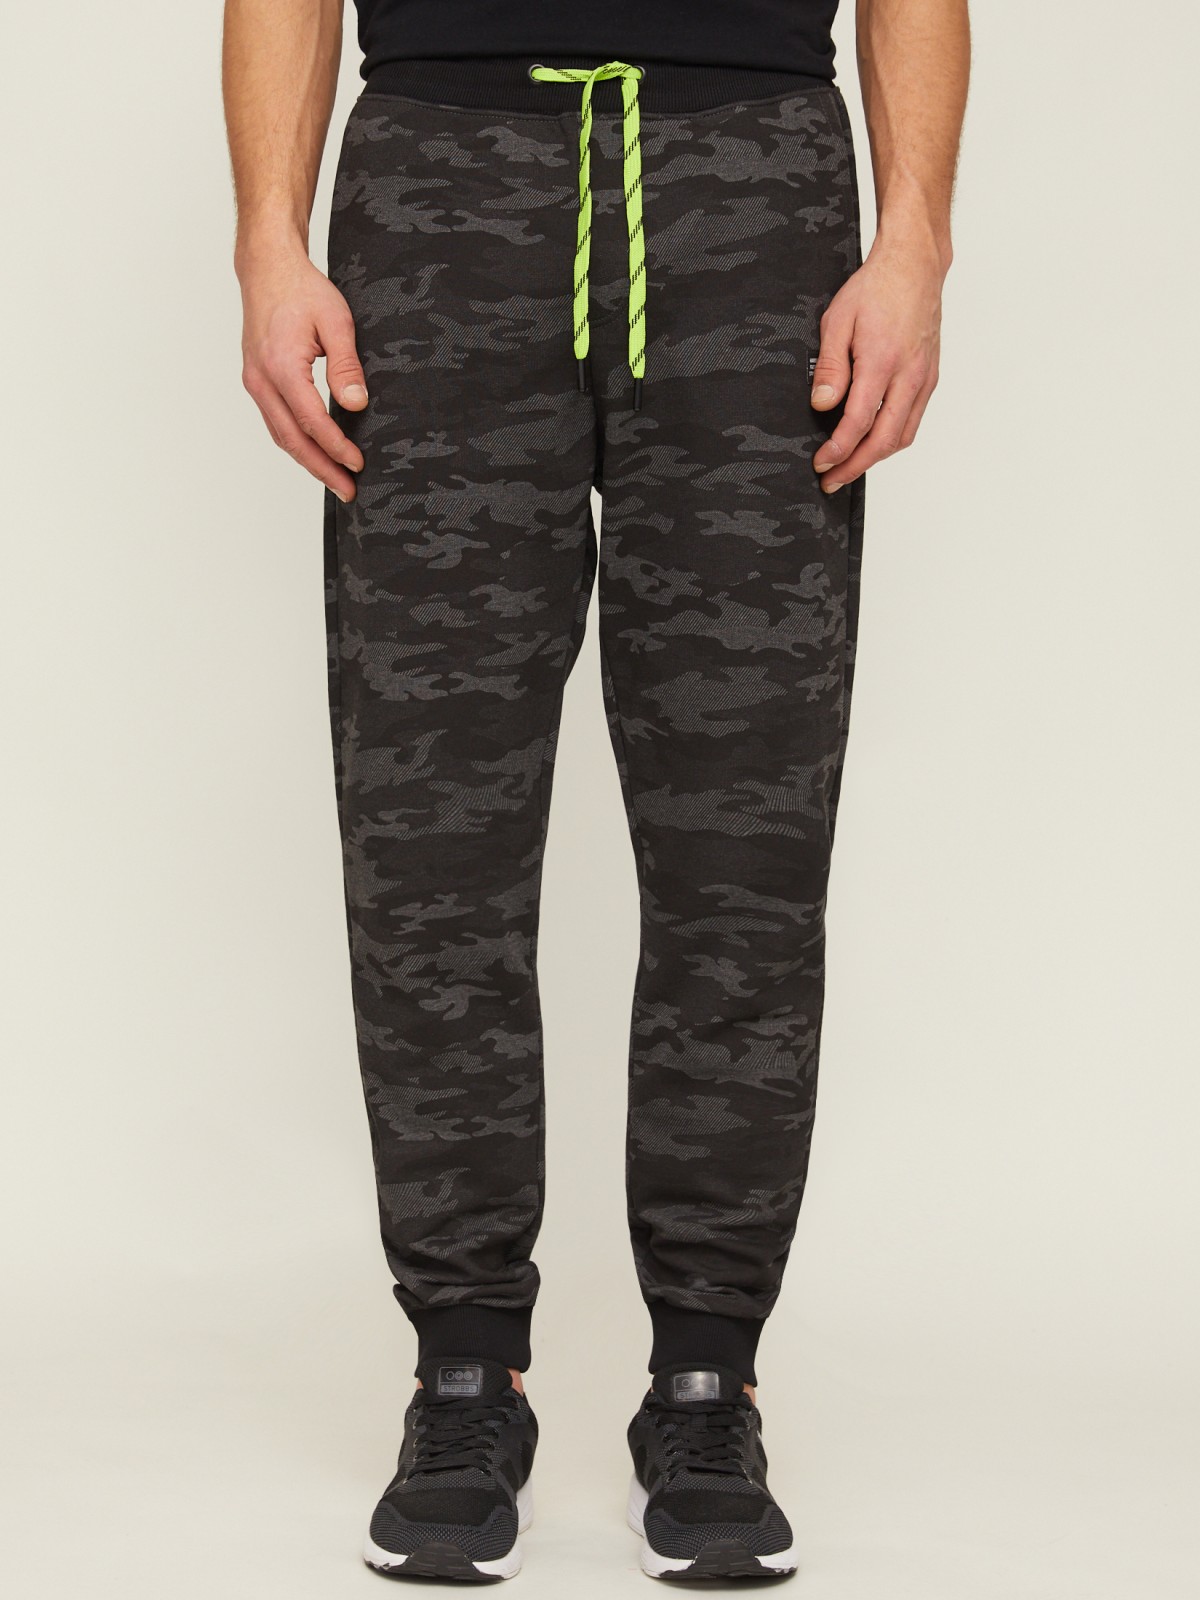 Трикотажные брюки-джоггеры с камуфляжным принтом zolla 21313761U033, цвет темно-серый, размер M - фото 2